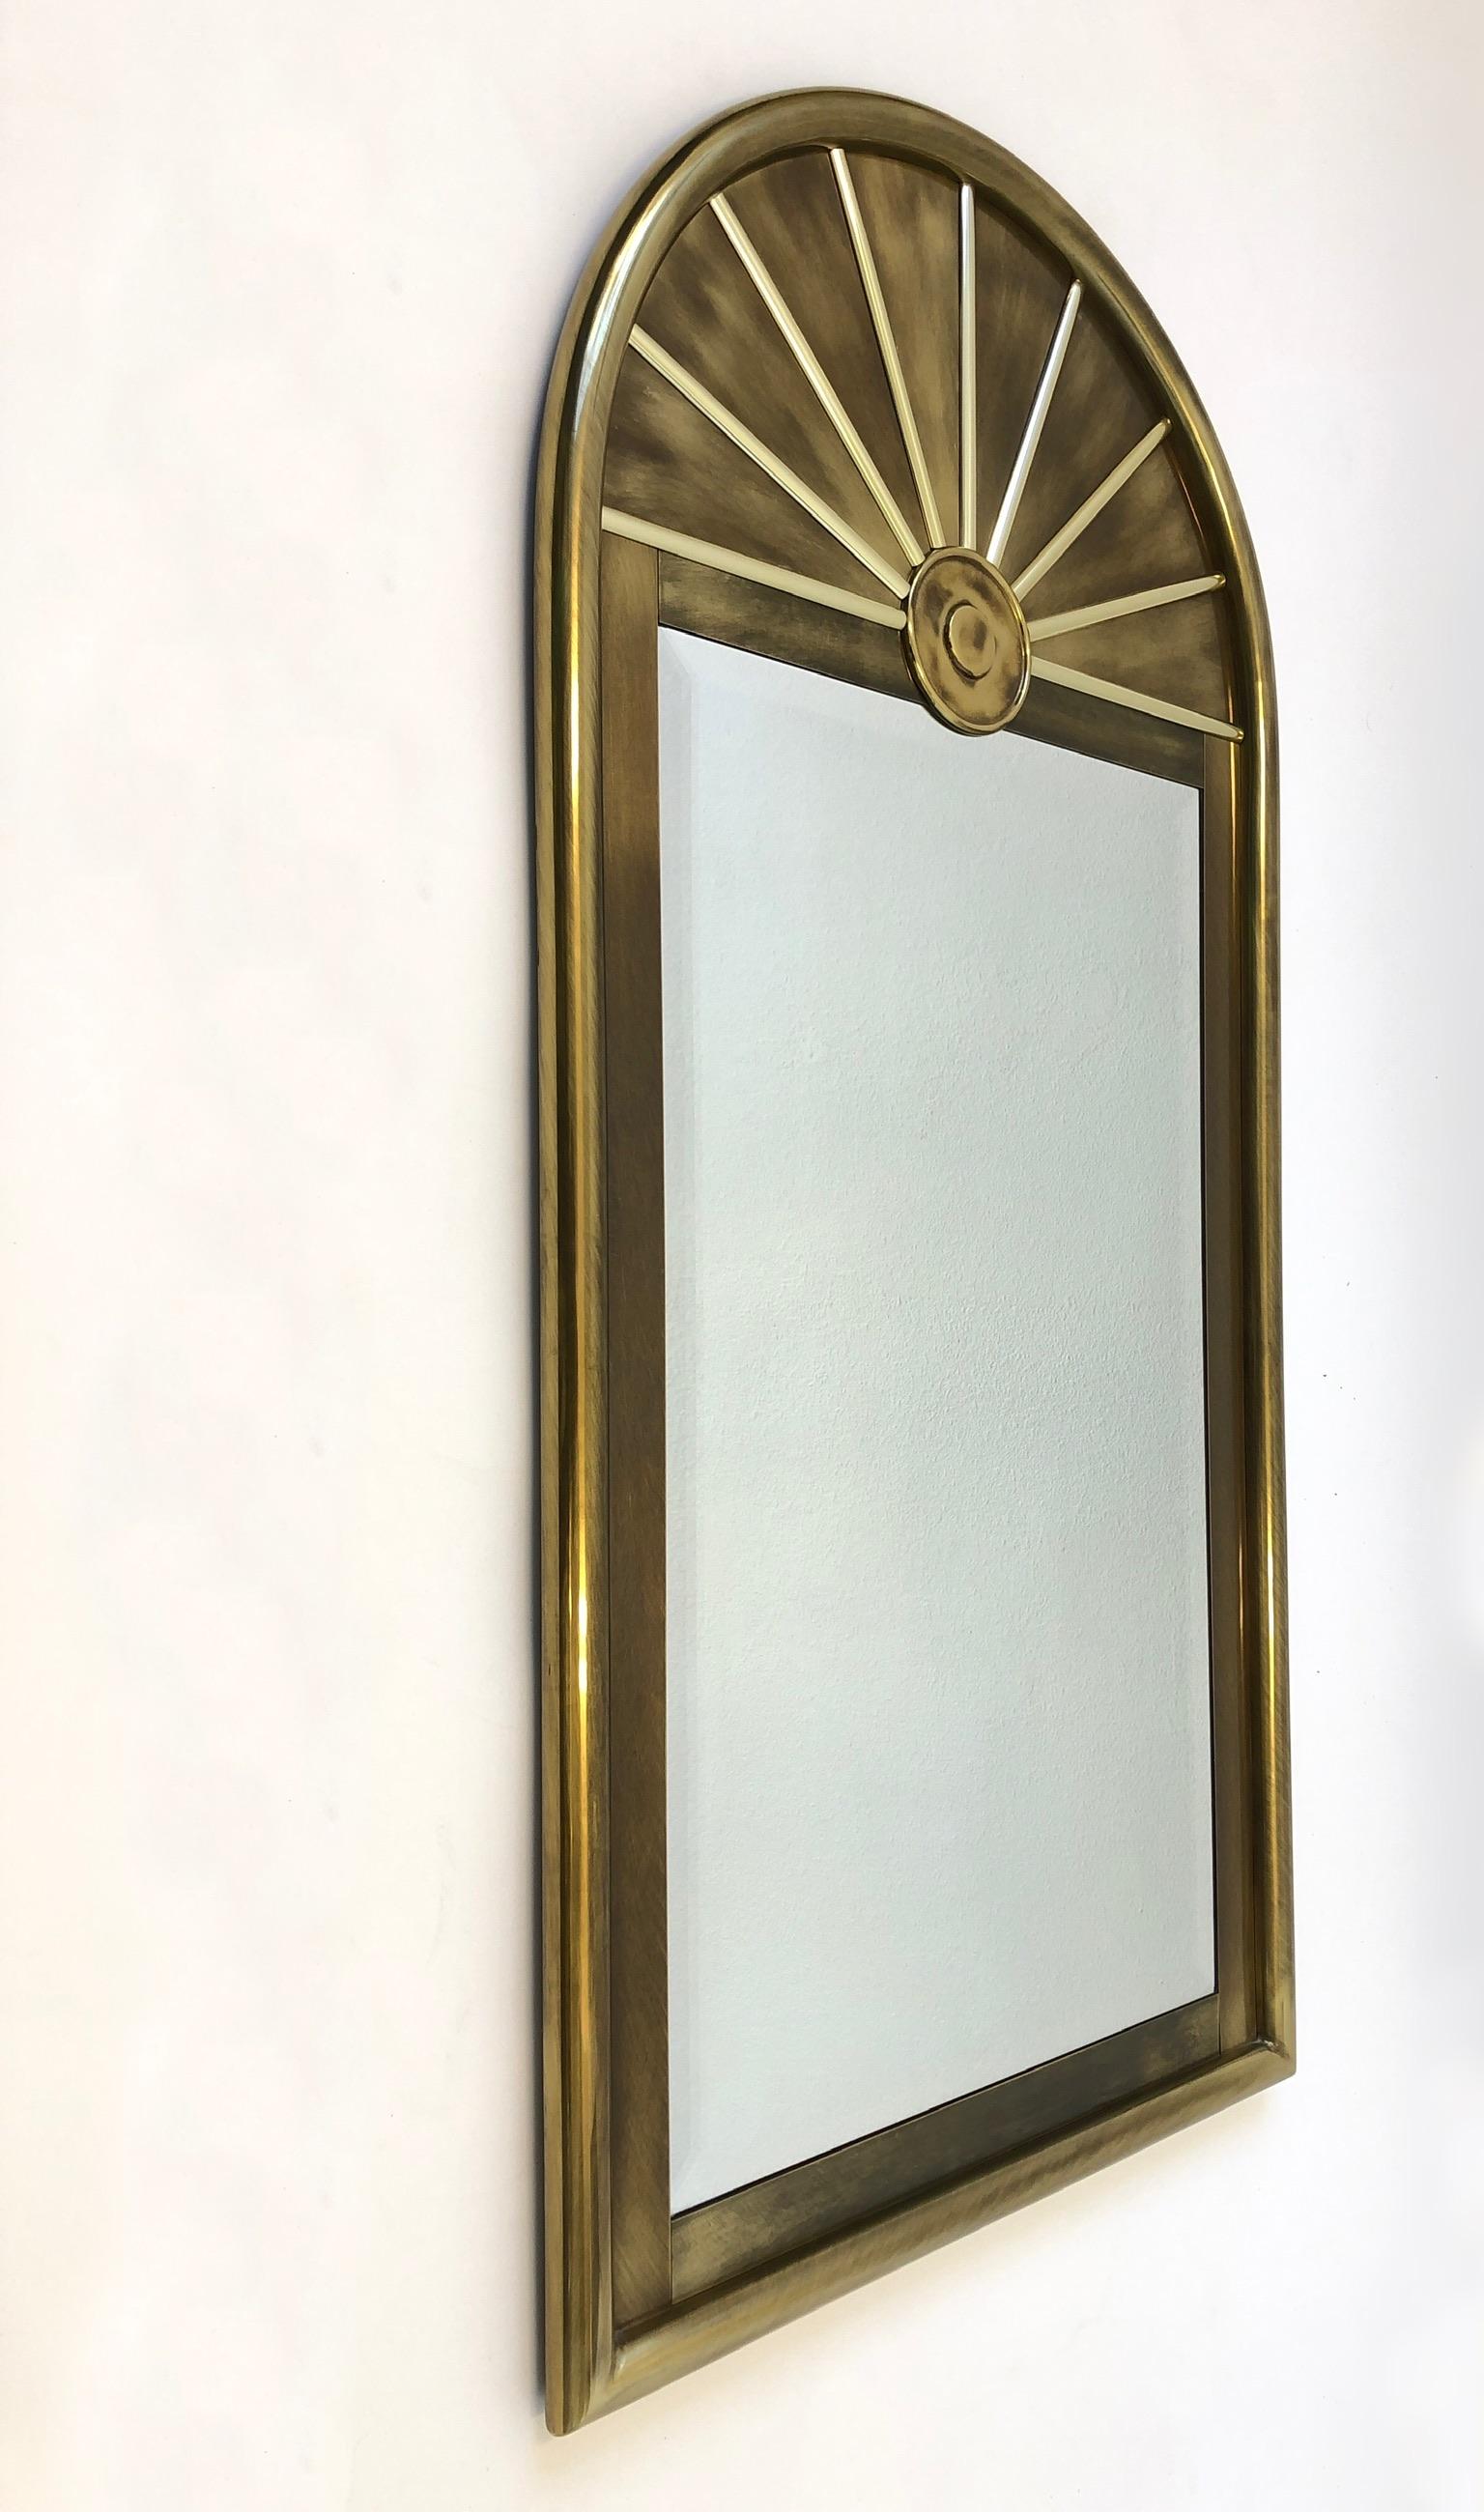 Magnifique miroir biseauté en laiton vieilli des années 1970, signé Mastercraft.
Le miroir est en état d'origine, il présente donc une usure mineure correspondant à son âge.
Mesures : 56